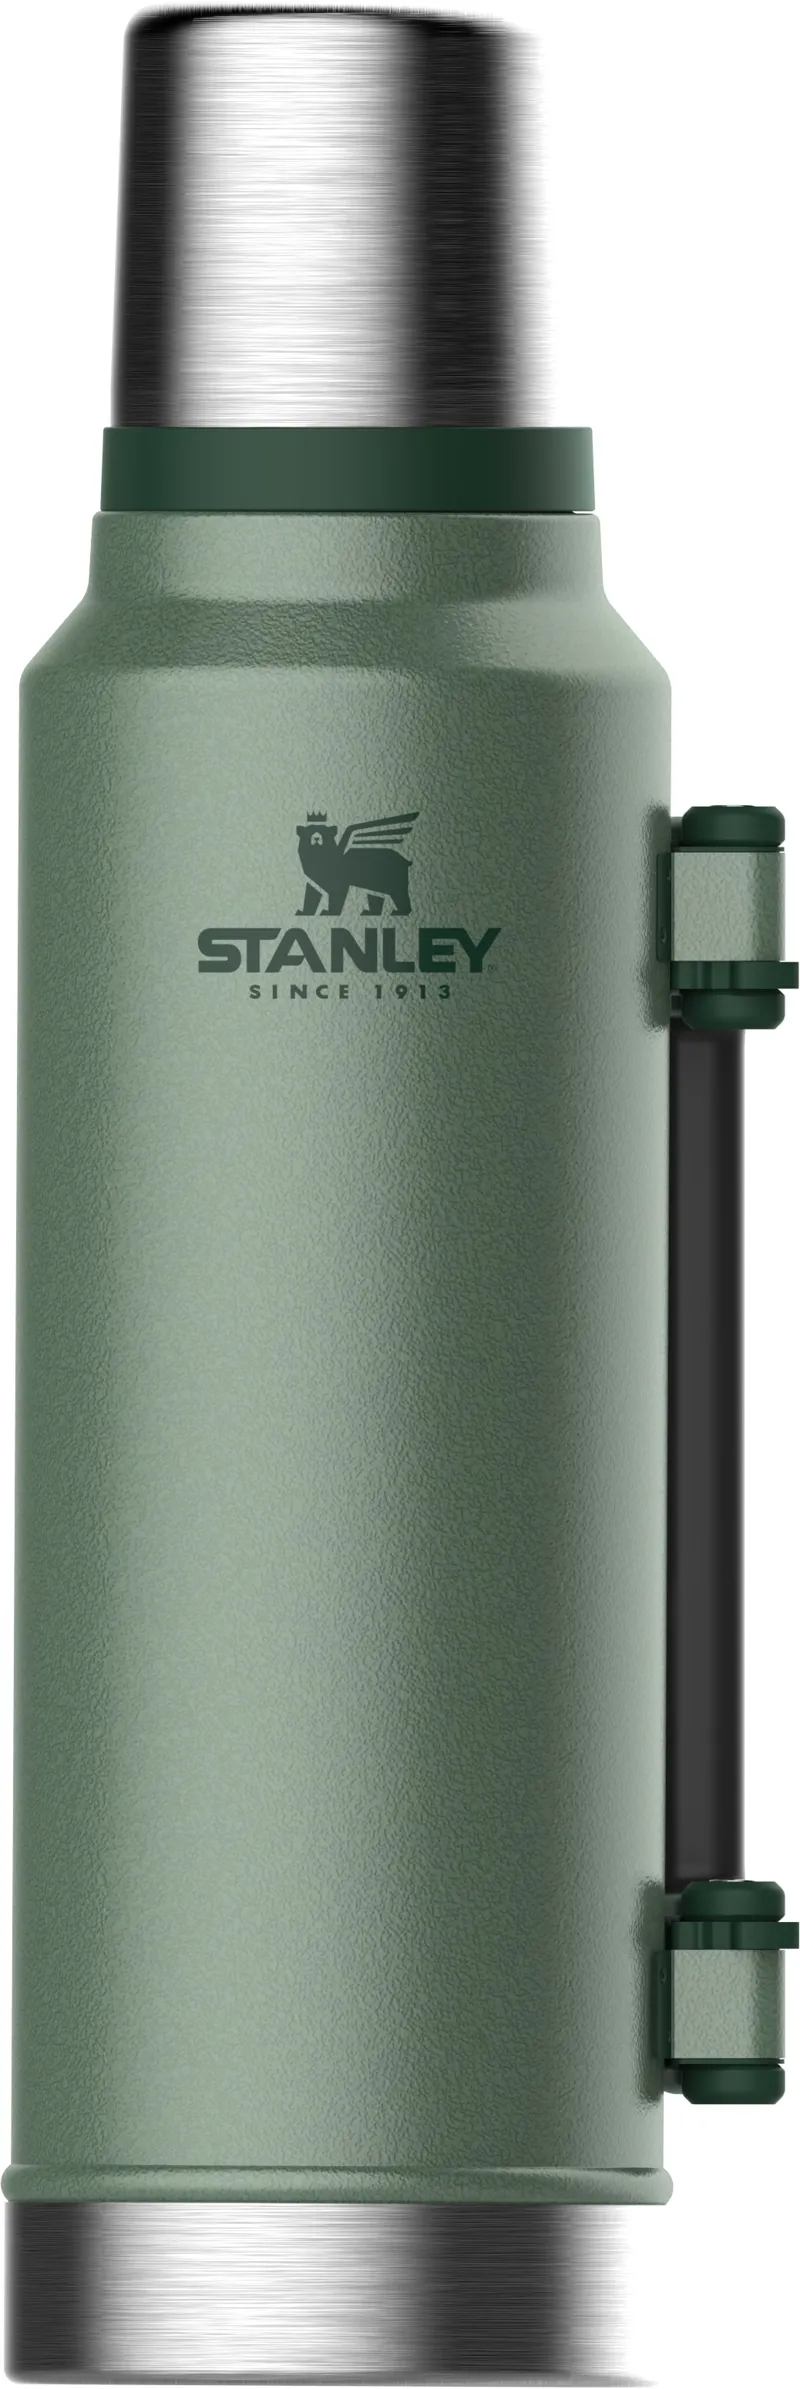 Stanley Hammertone Green Classic Legendary Bottle - 1.5 Qt